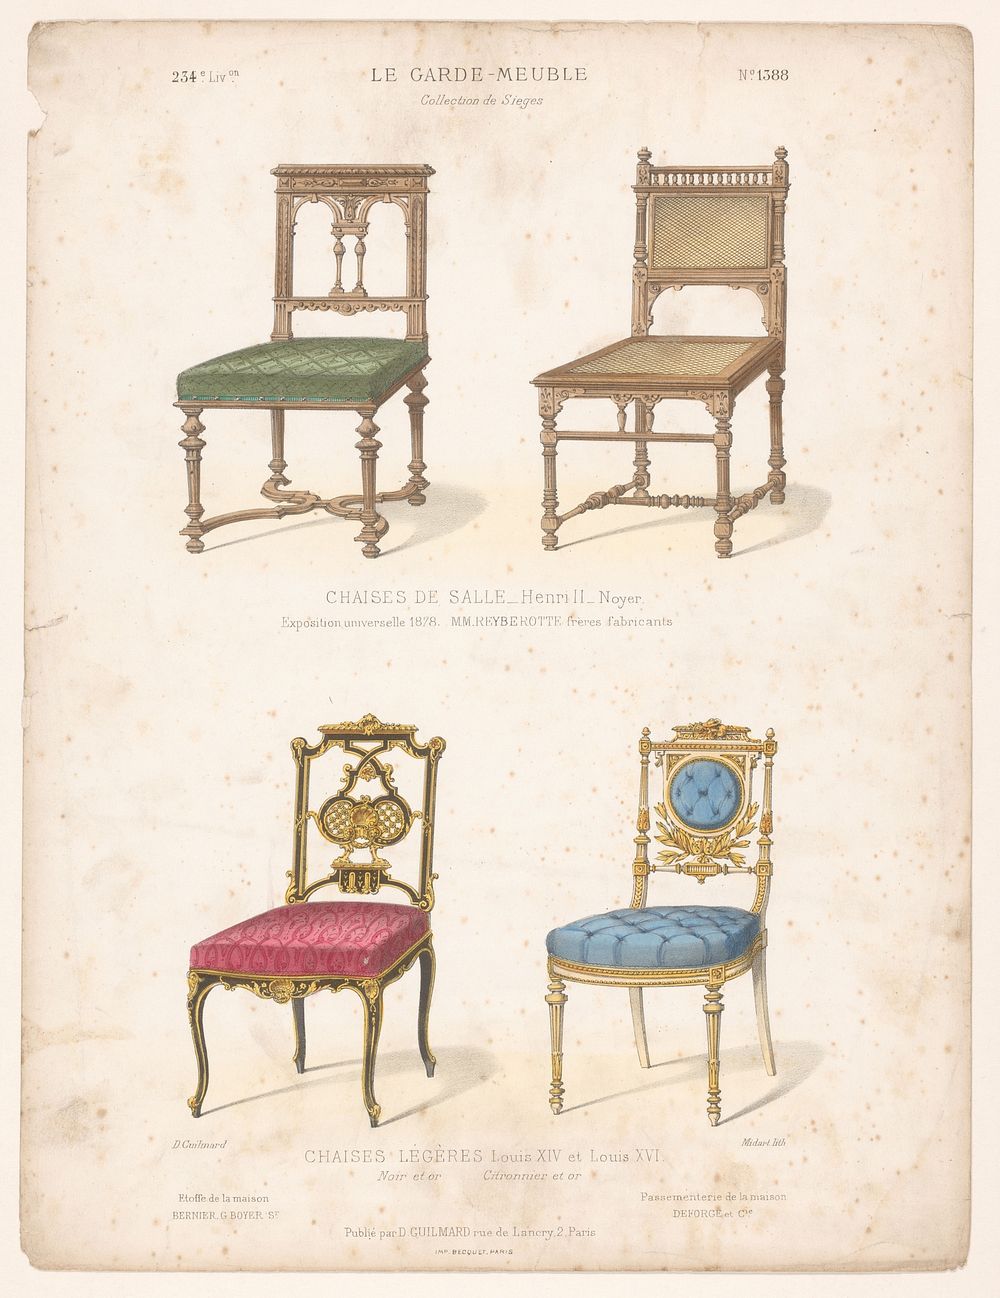 Vier stoelen (1839 - 1885) by Midart, Becquet and Désiré Guilmard